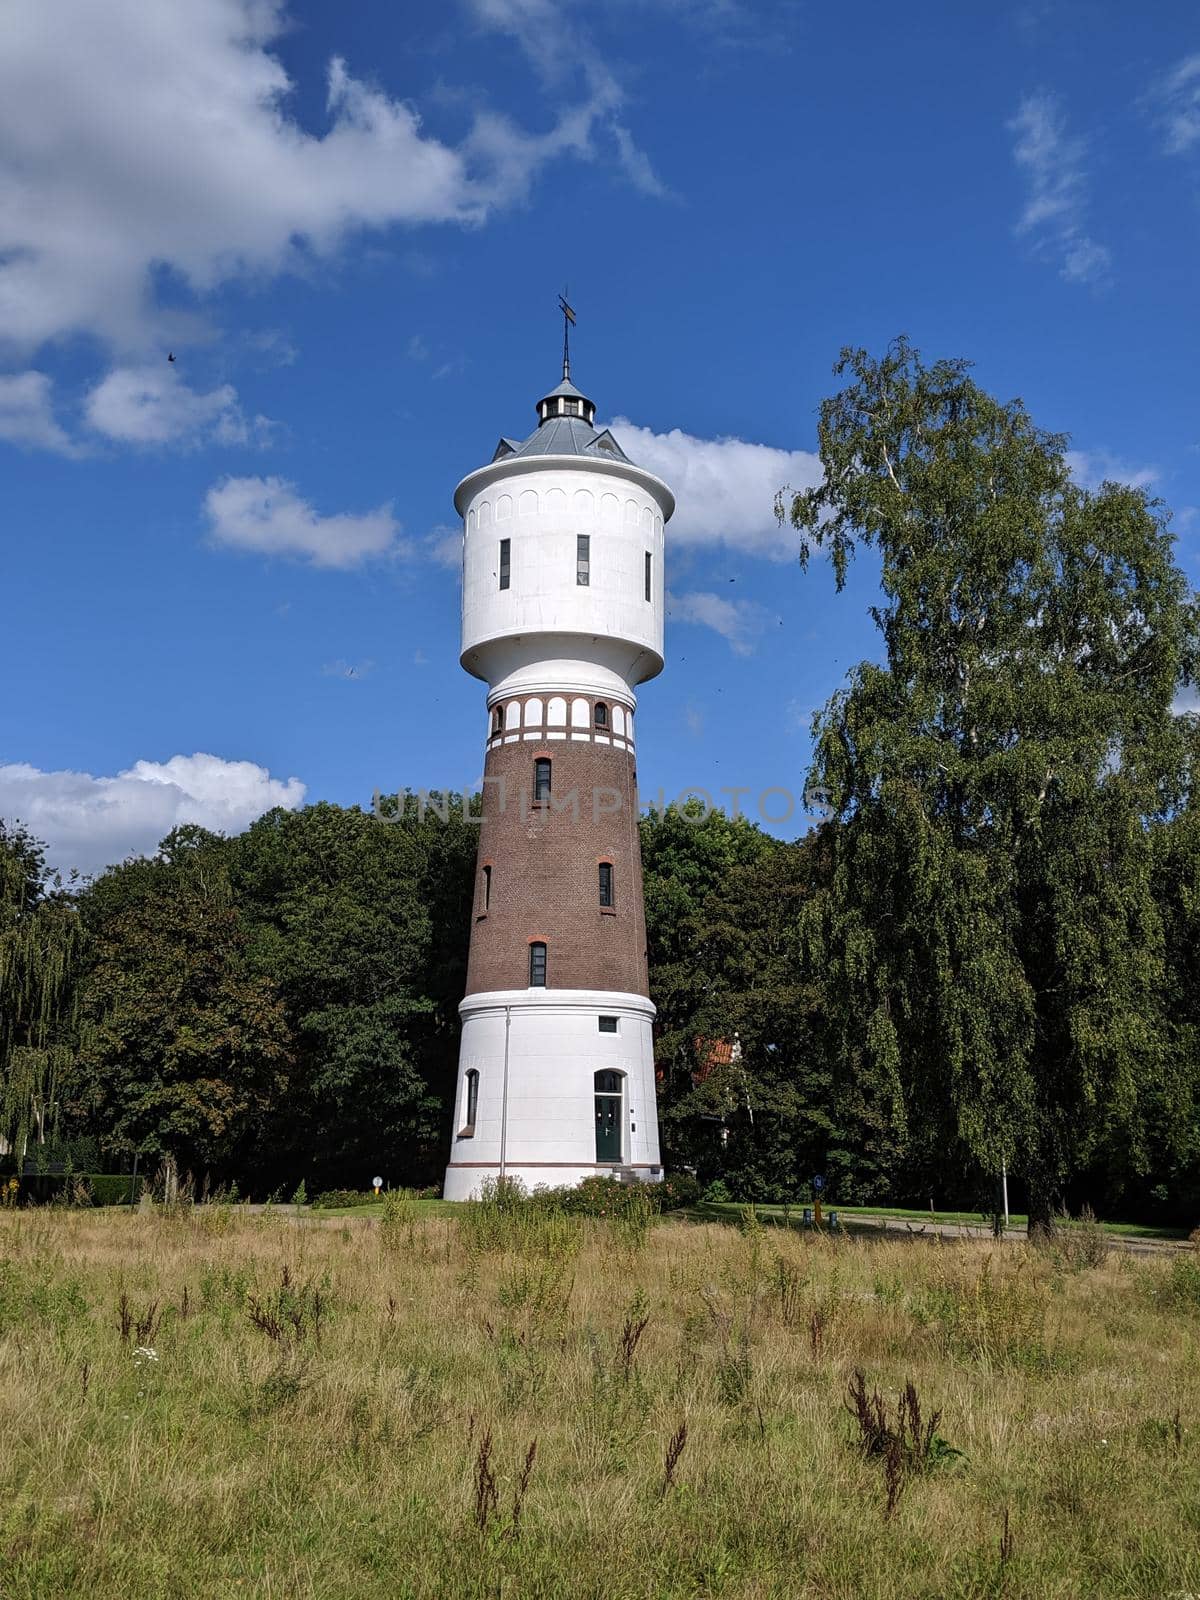 Water tower in Coevorden, Drenthe The Netherlands